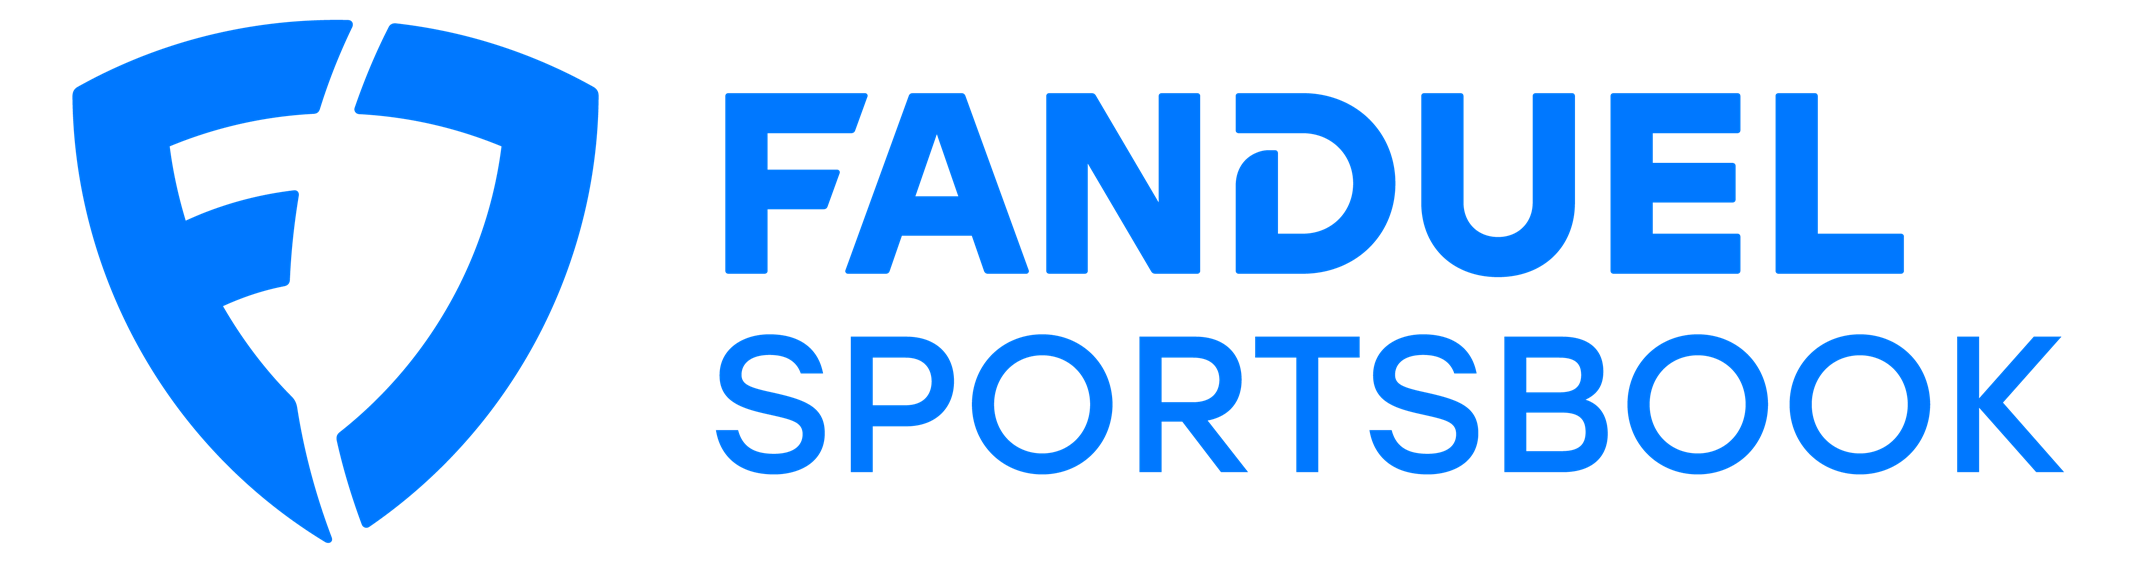 Maryland Fanduel Sportsbook